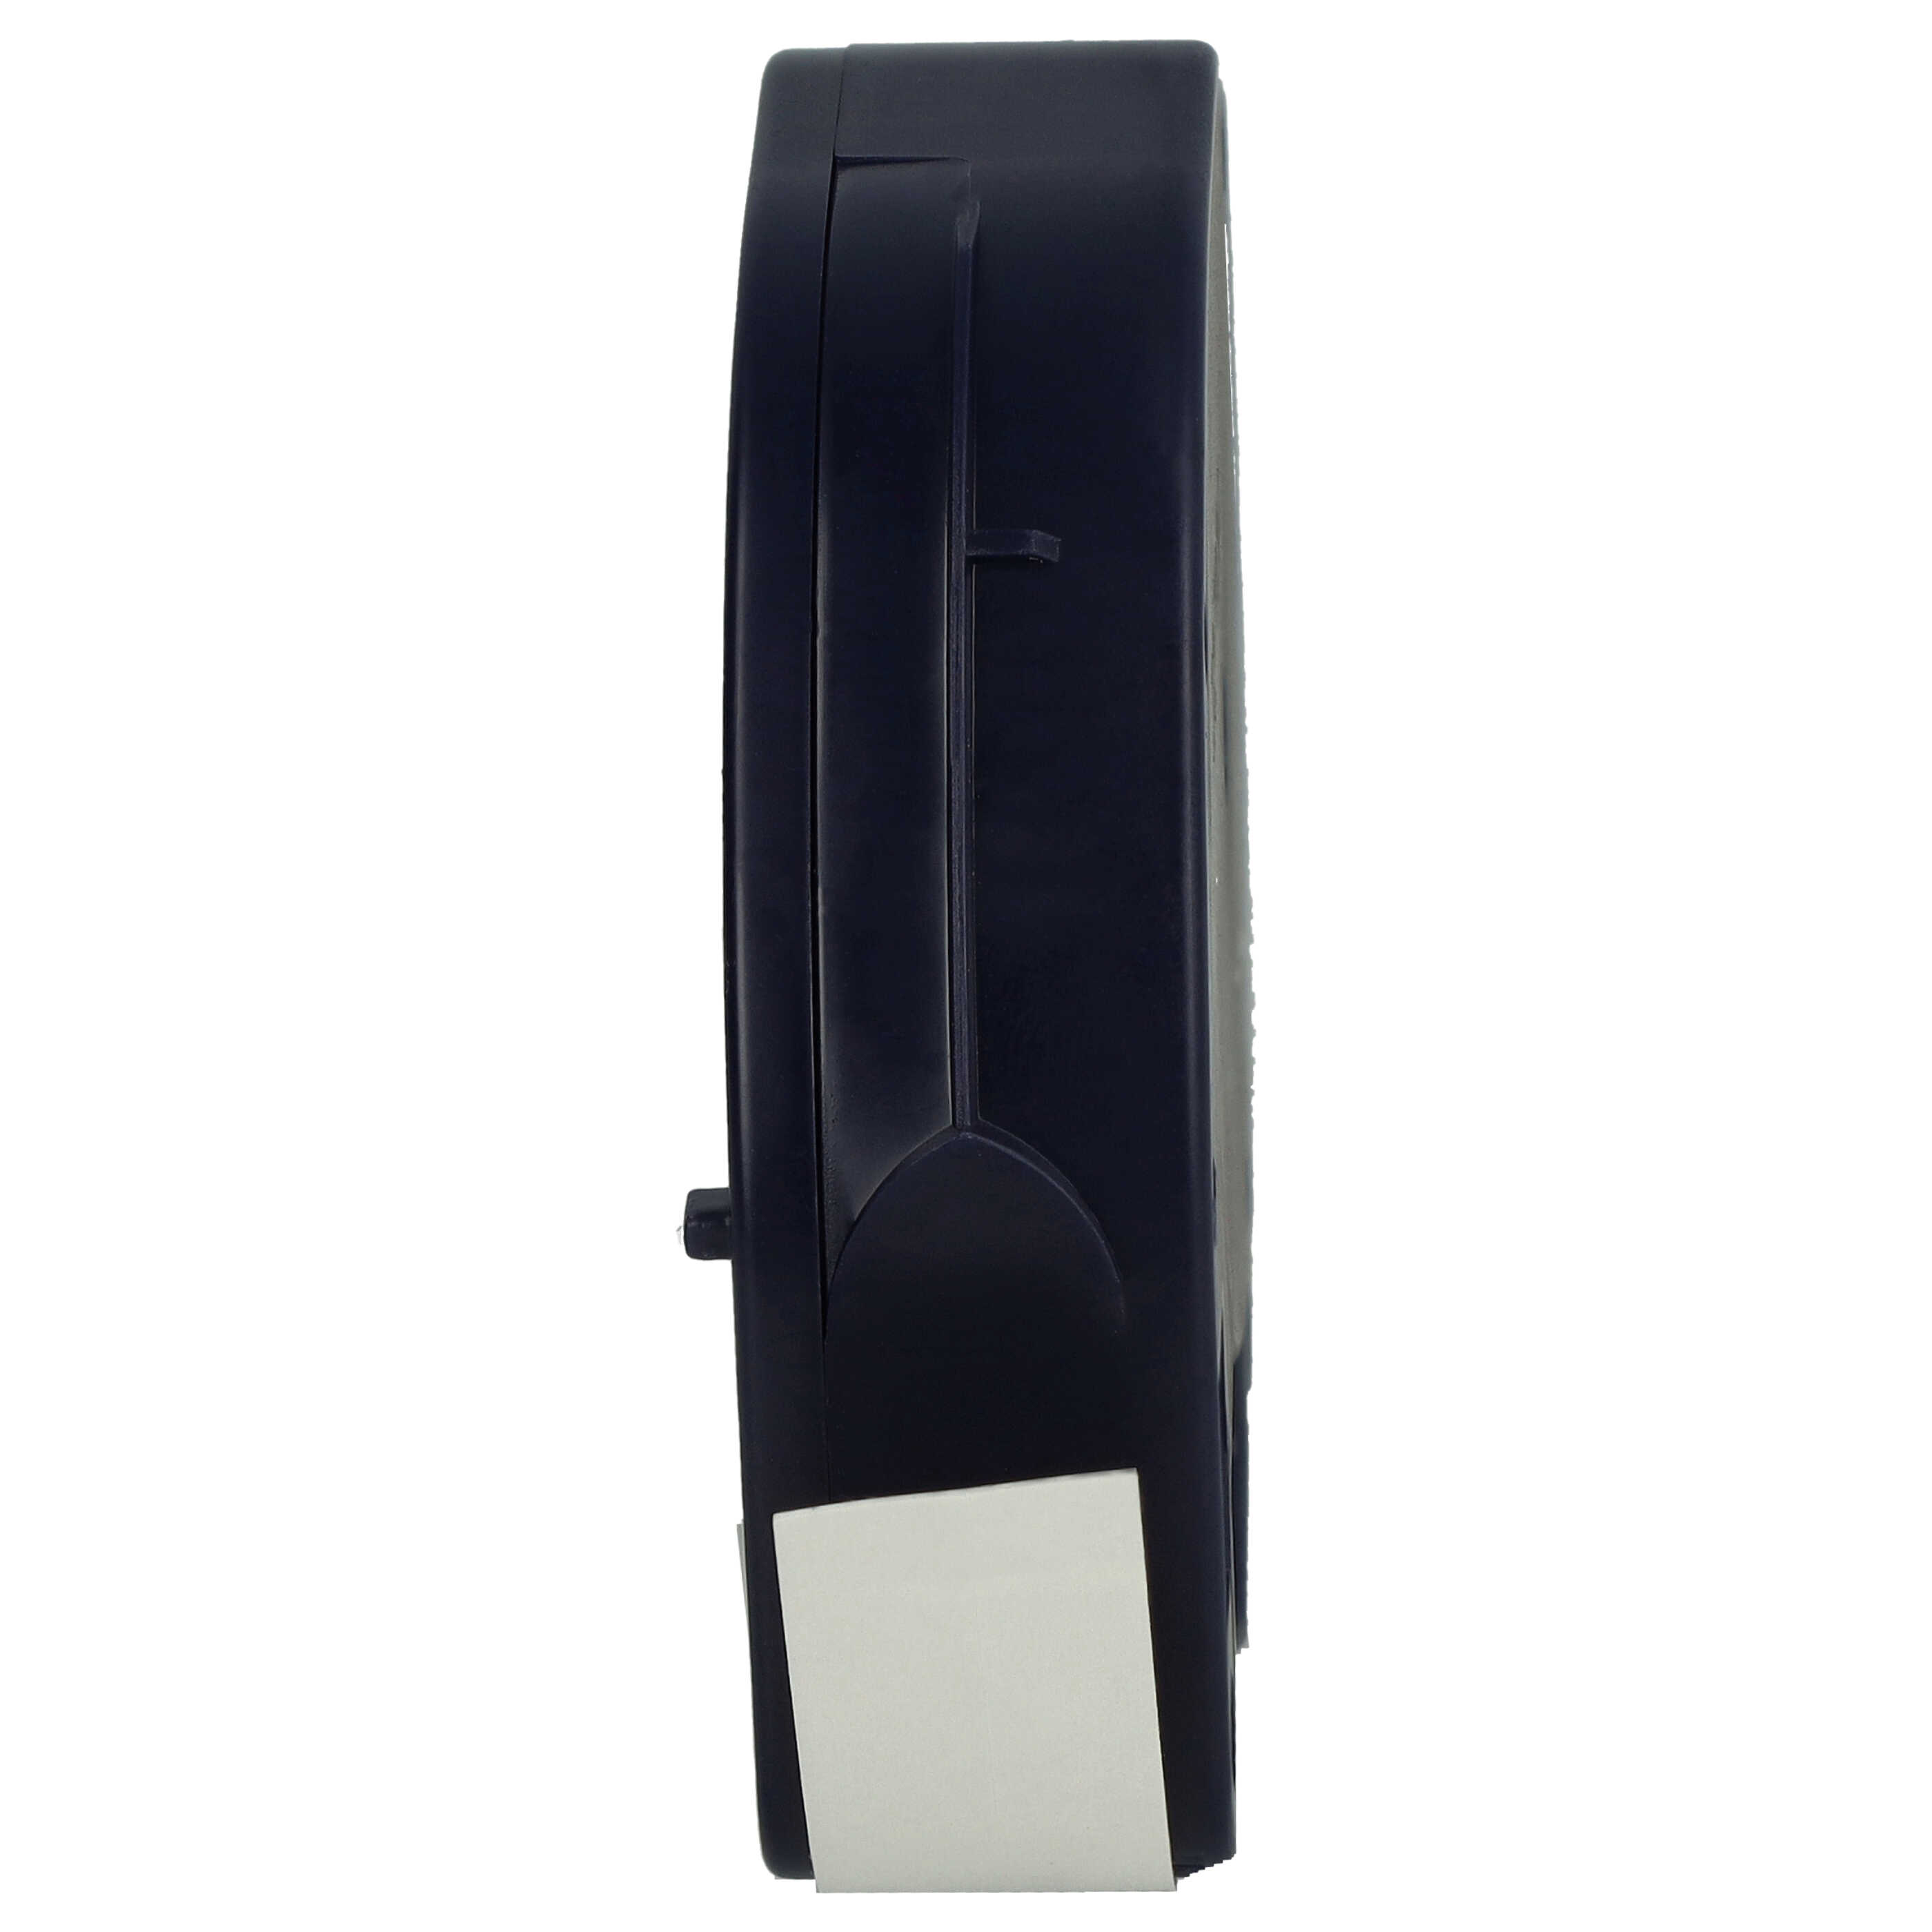 Cassetta nastro plastica sostituisce Dymo 91221 per etichettatrice Dymo 12mm nero su bianco, plastica